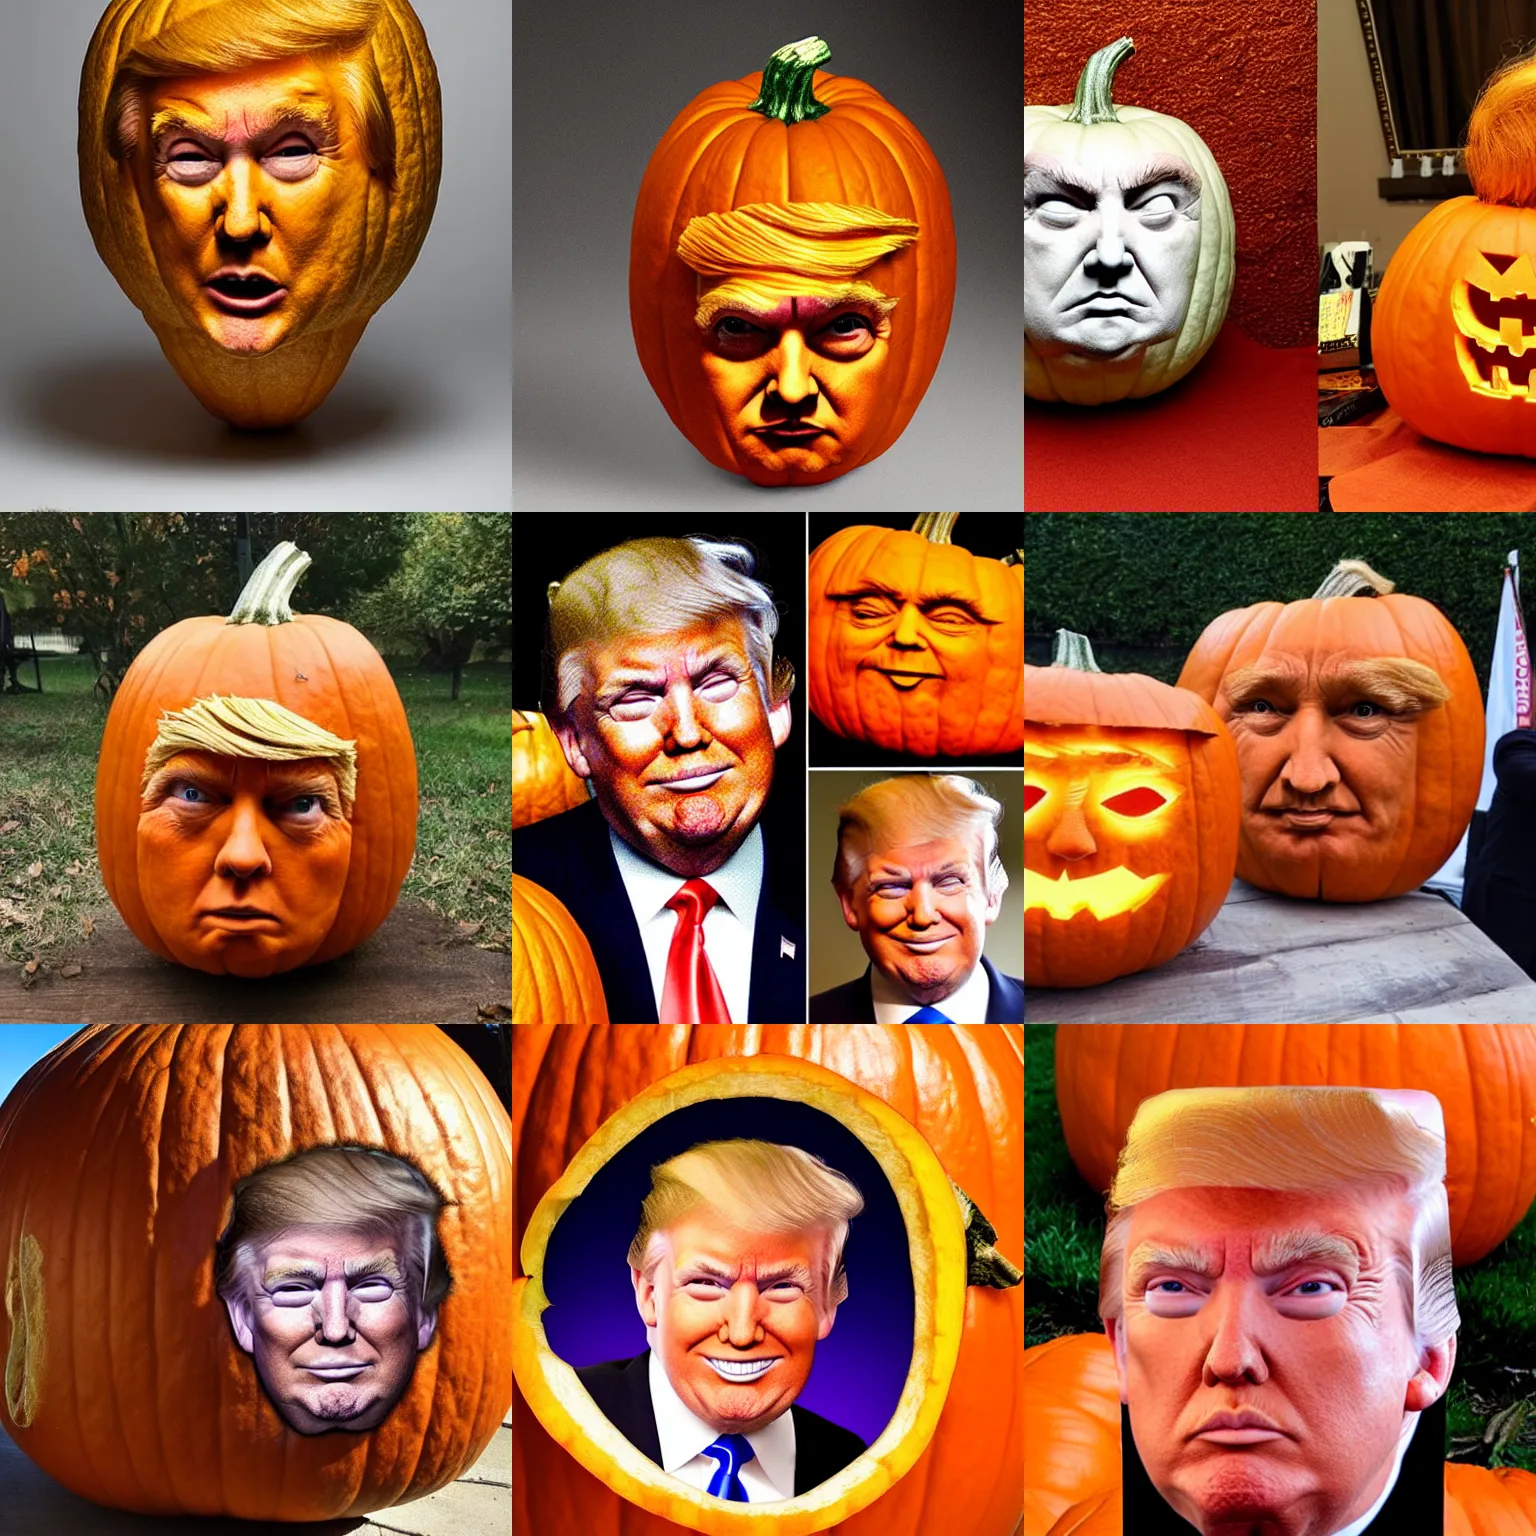 Prompt: donald trump face inside a pumpkin, pumpkin hair, hair, face, pumpkin